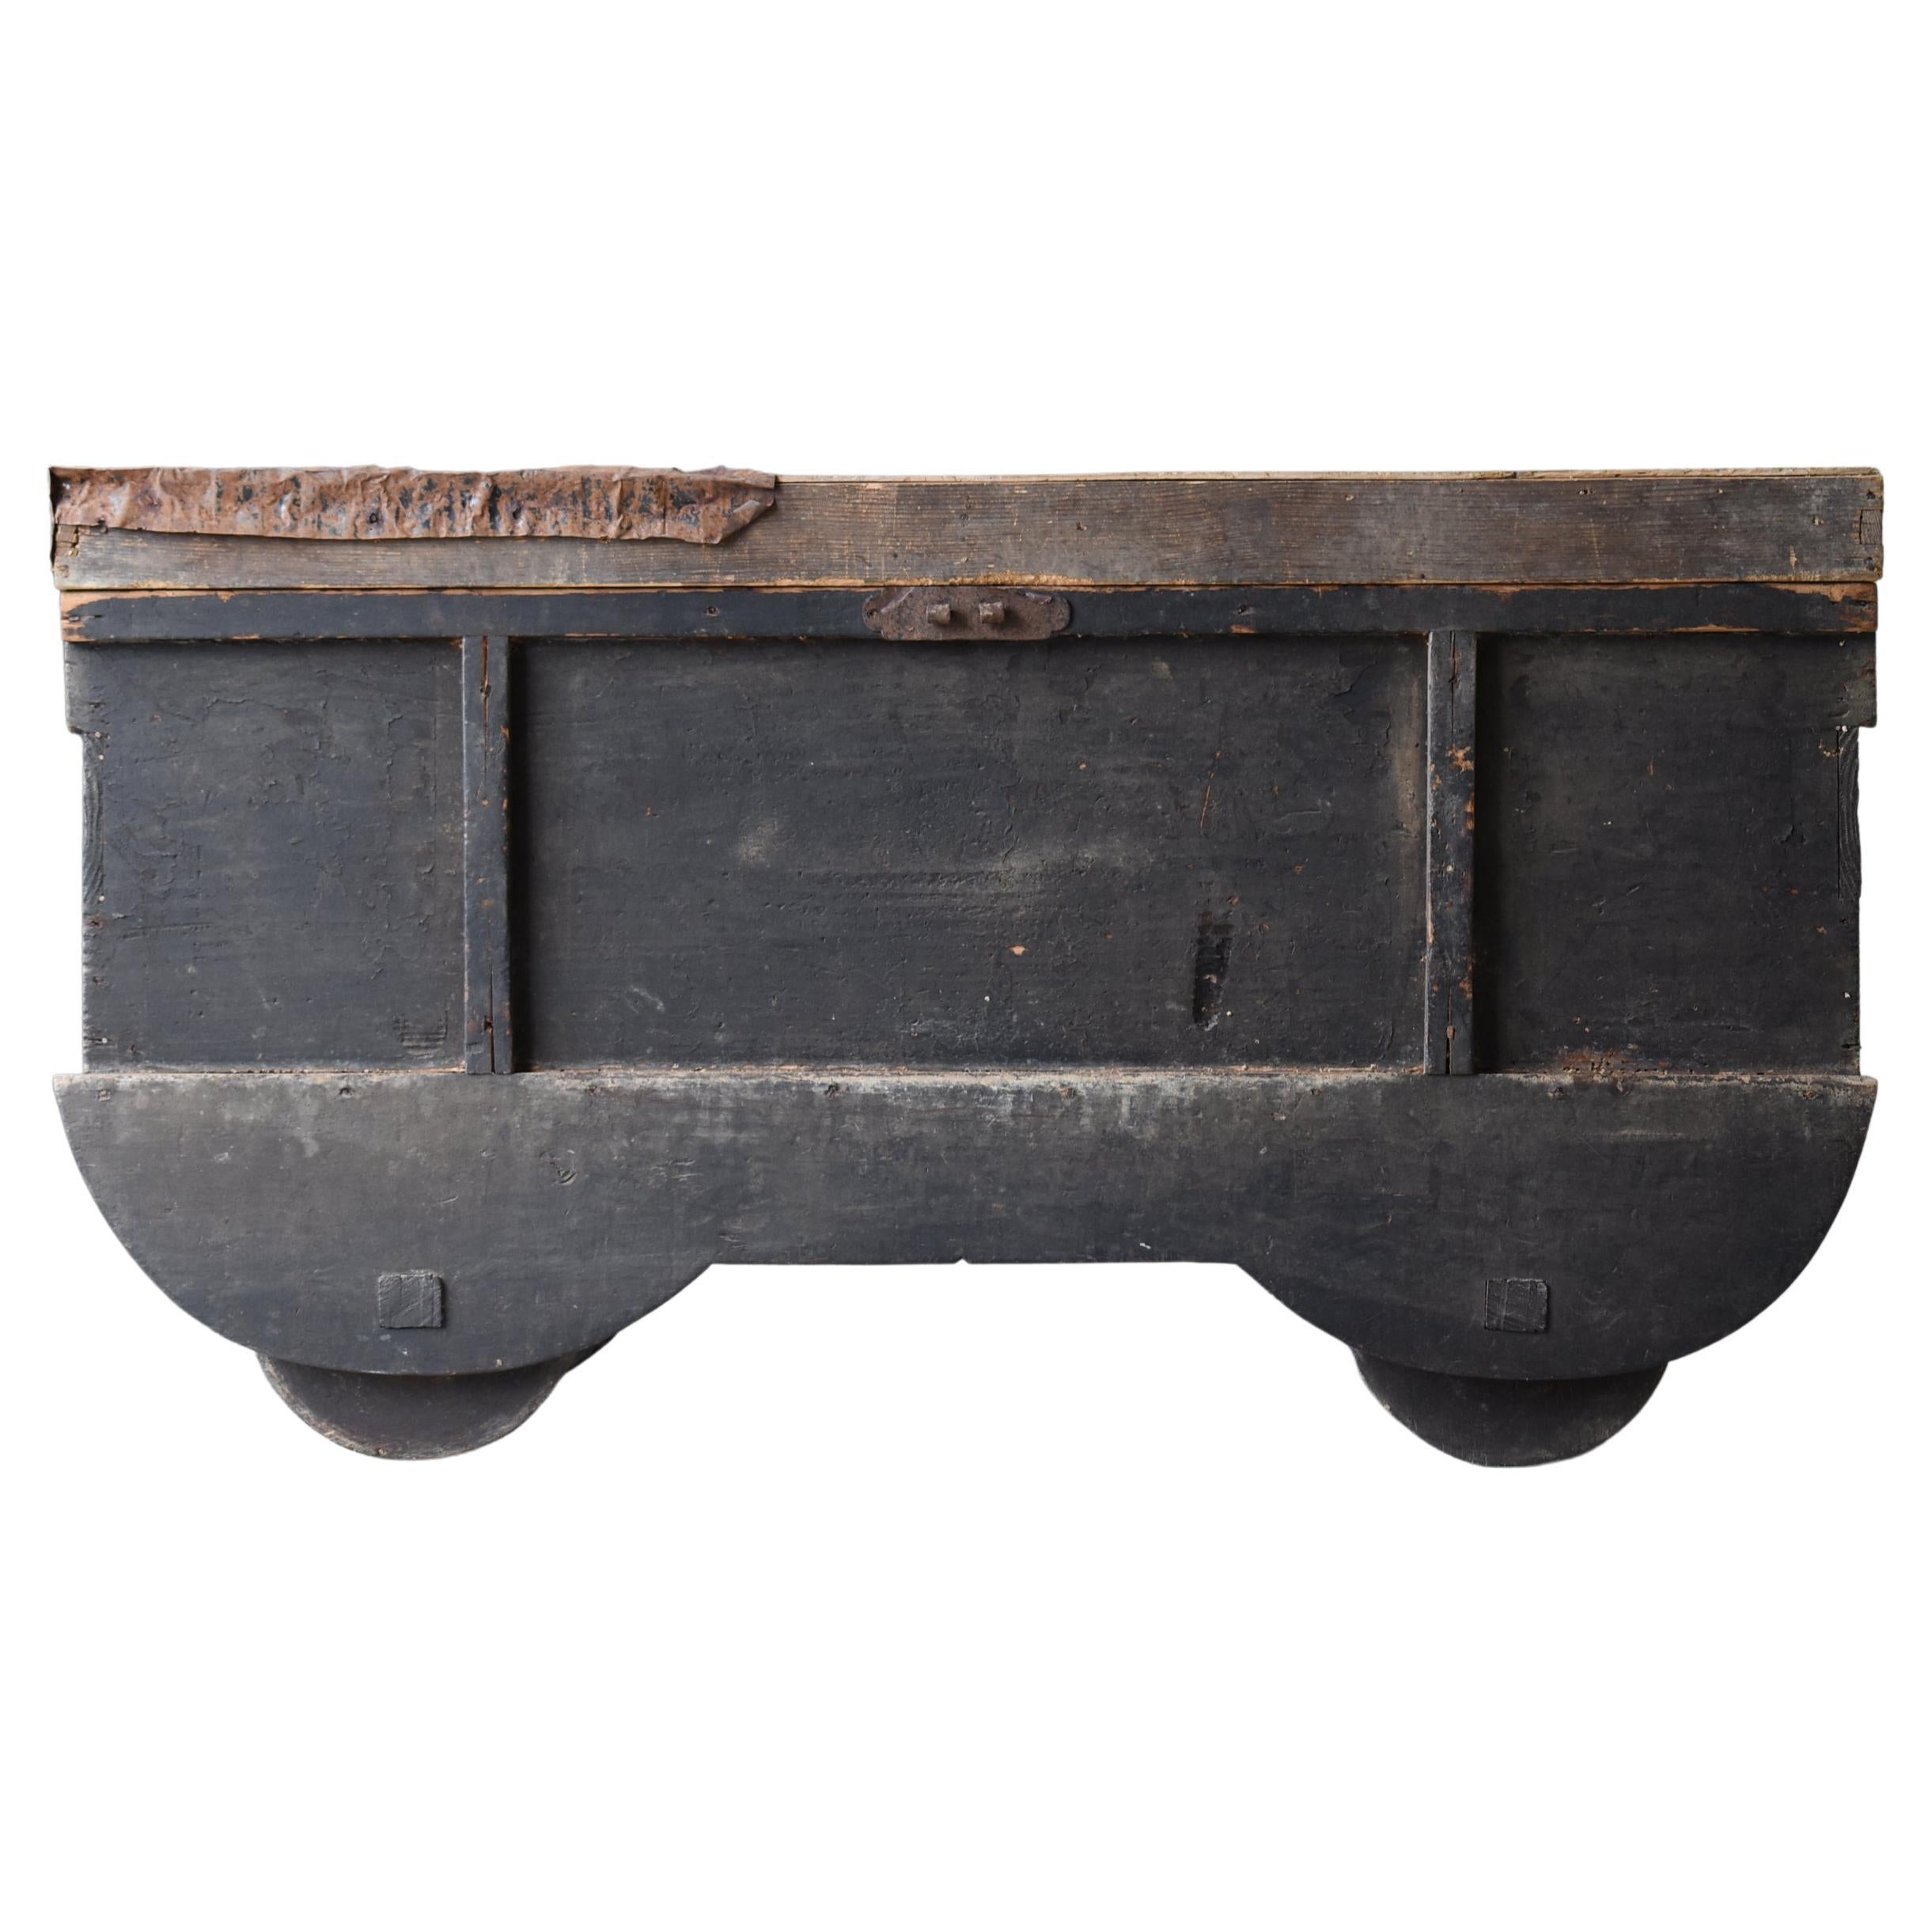 Japanese Antique Wabi Sabi Tansu 1860s-1900s / Storage Box Cabinet Sideboard